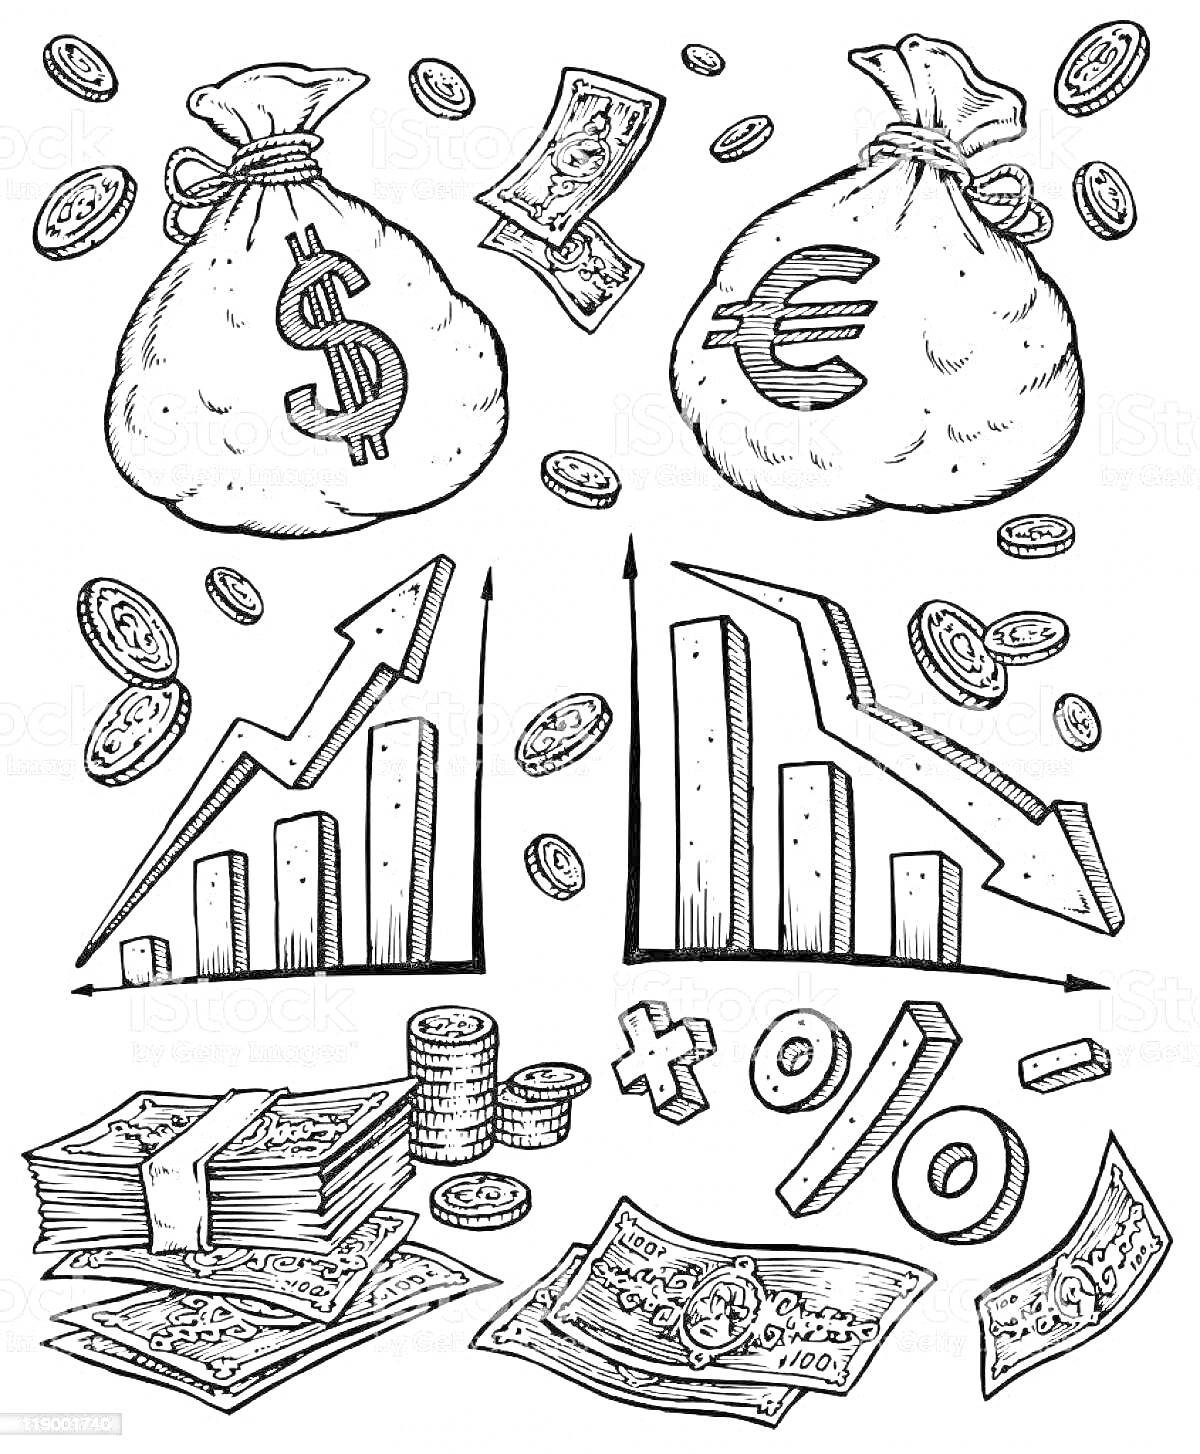 Мешки с деньгами (доллары и евро), графики роста и падения, монеты, стопки денег, купюры, математические символы (плюс, минус, процент)